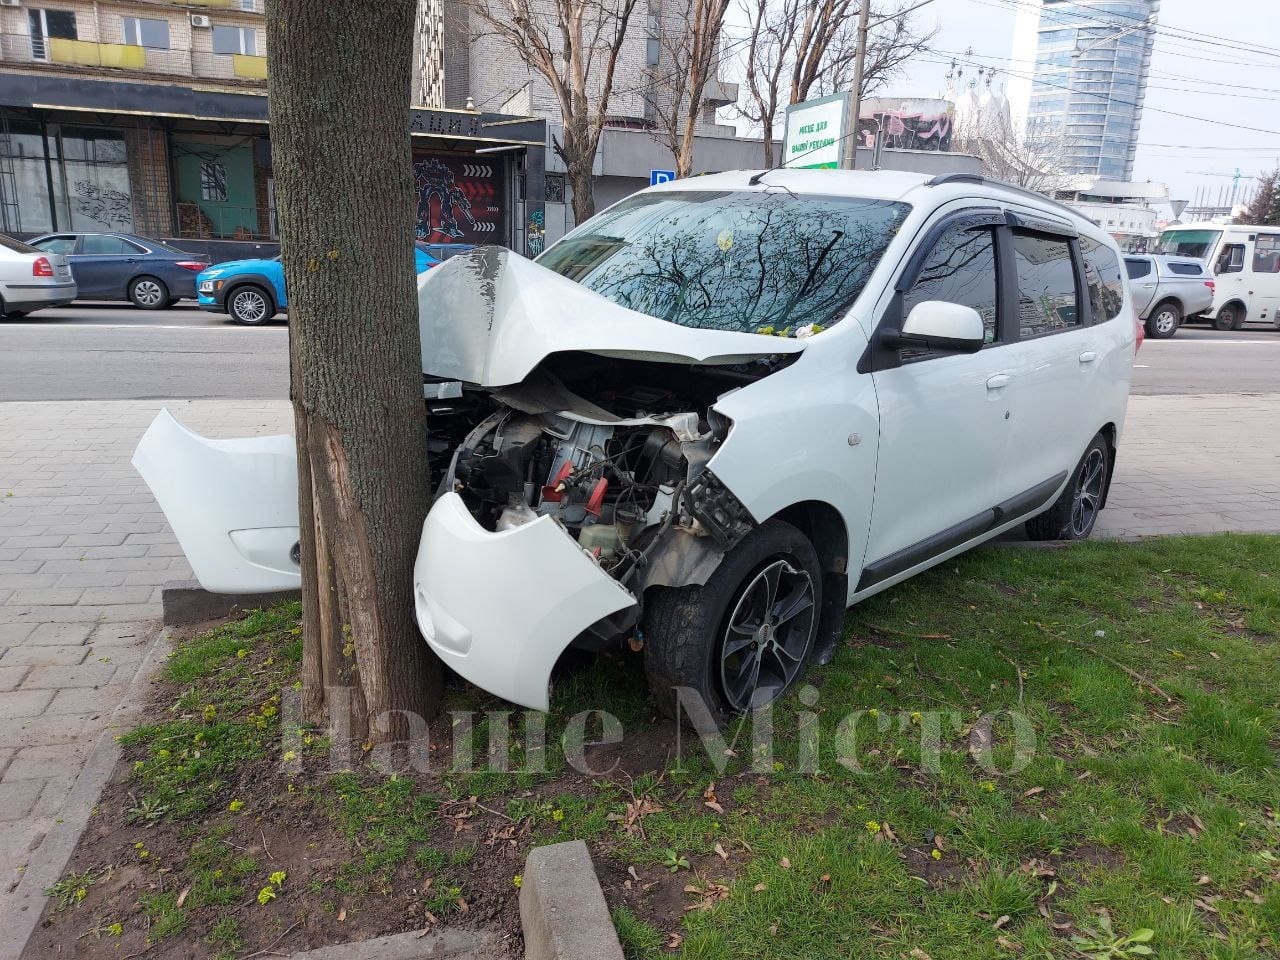 Напротив цирка Renault влетел в дерево (Фото) – новости Днепра